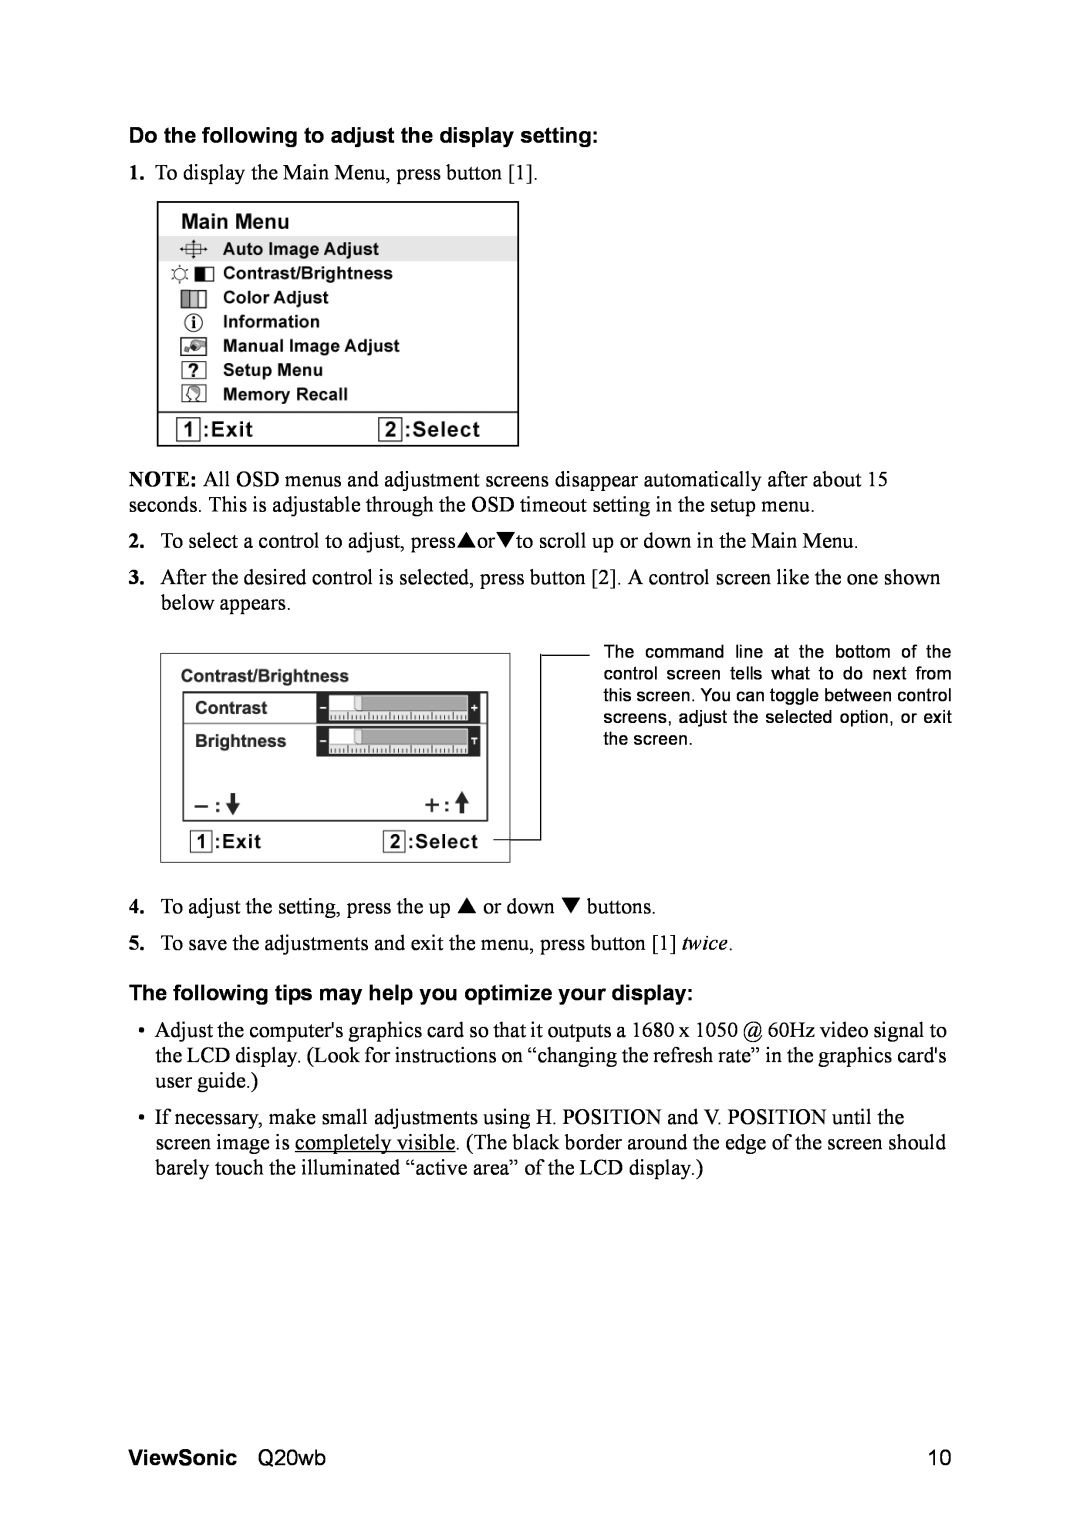 ViewSonic Q20WB, VS11674 manual Do the following to adjust the display setting, ViewSonic Q20wb 